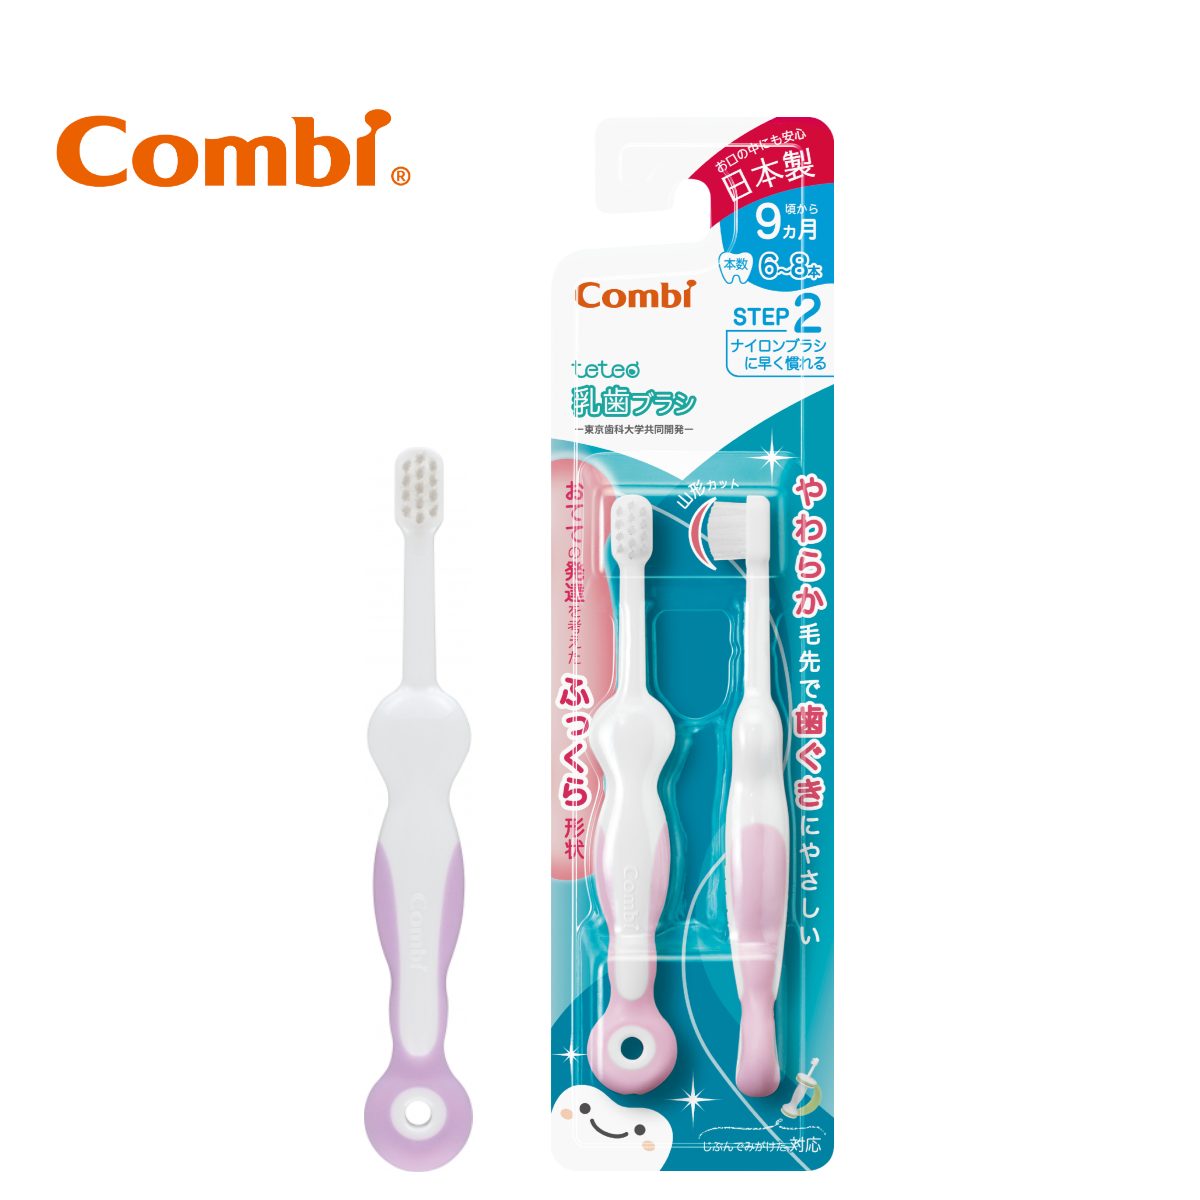 Combi Teto Toothbrush Step 2 - 2pcs